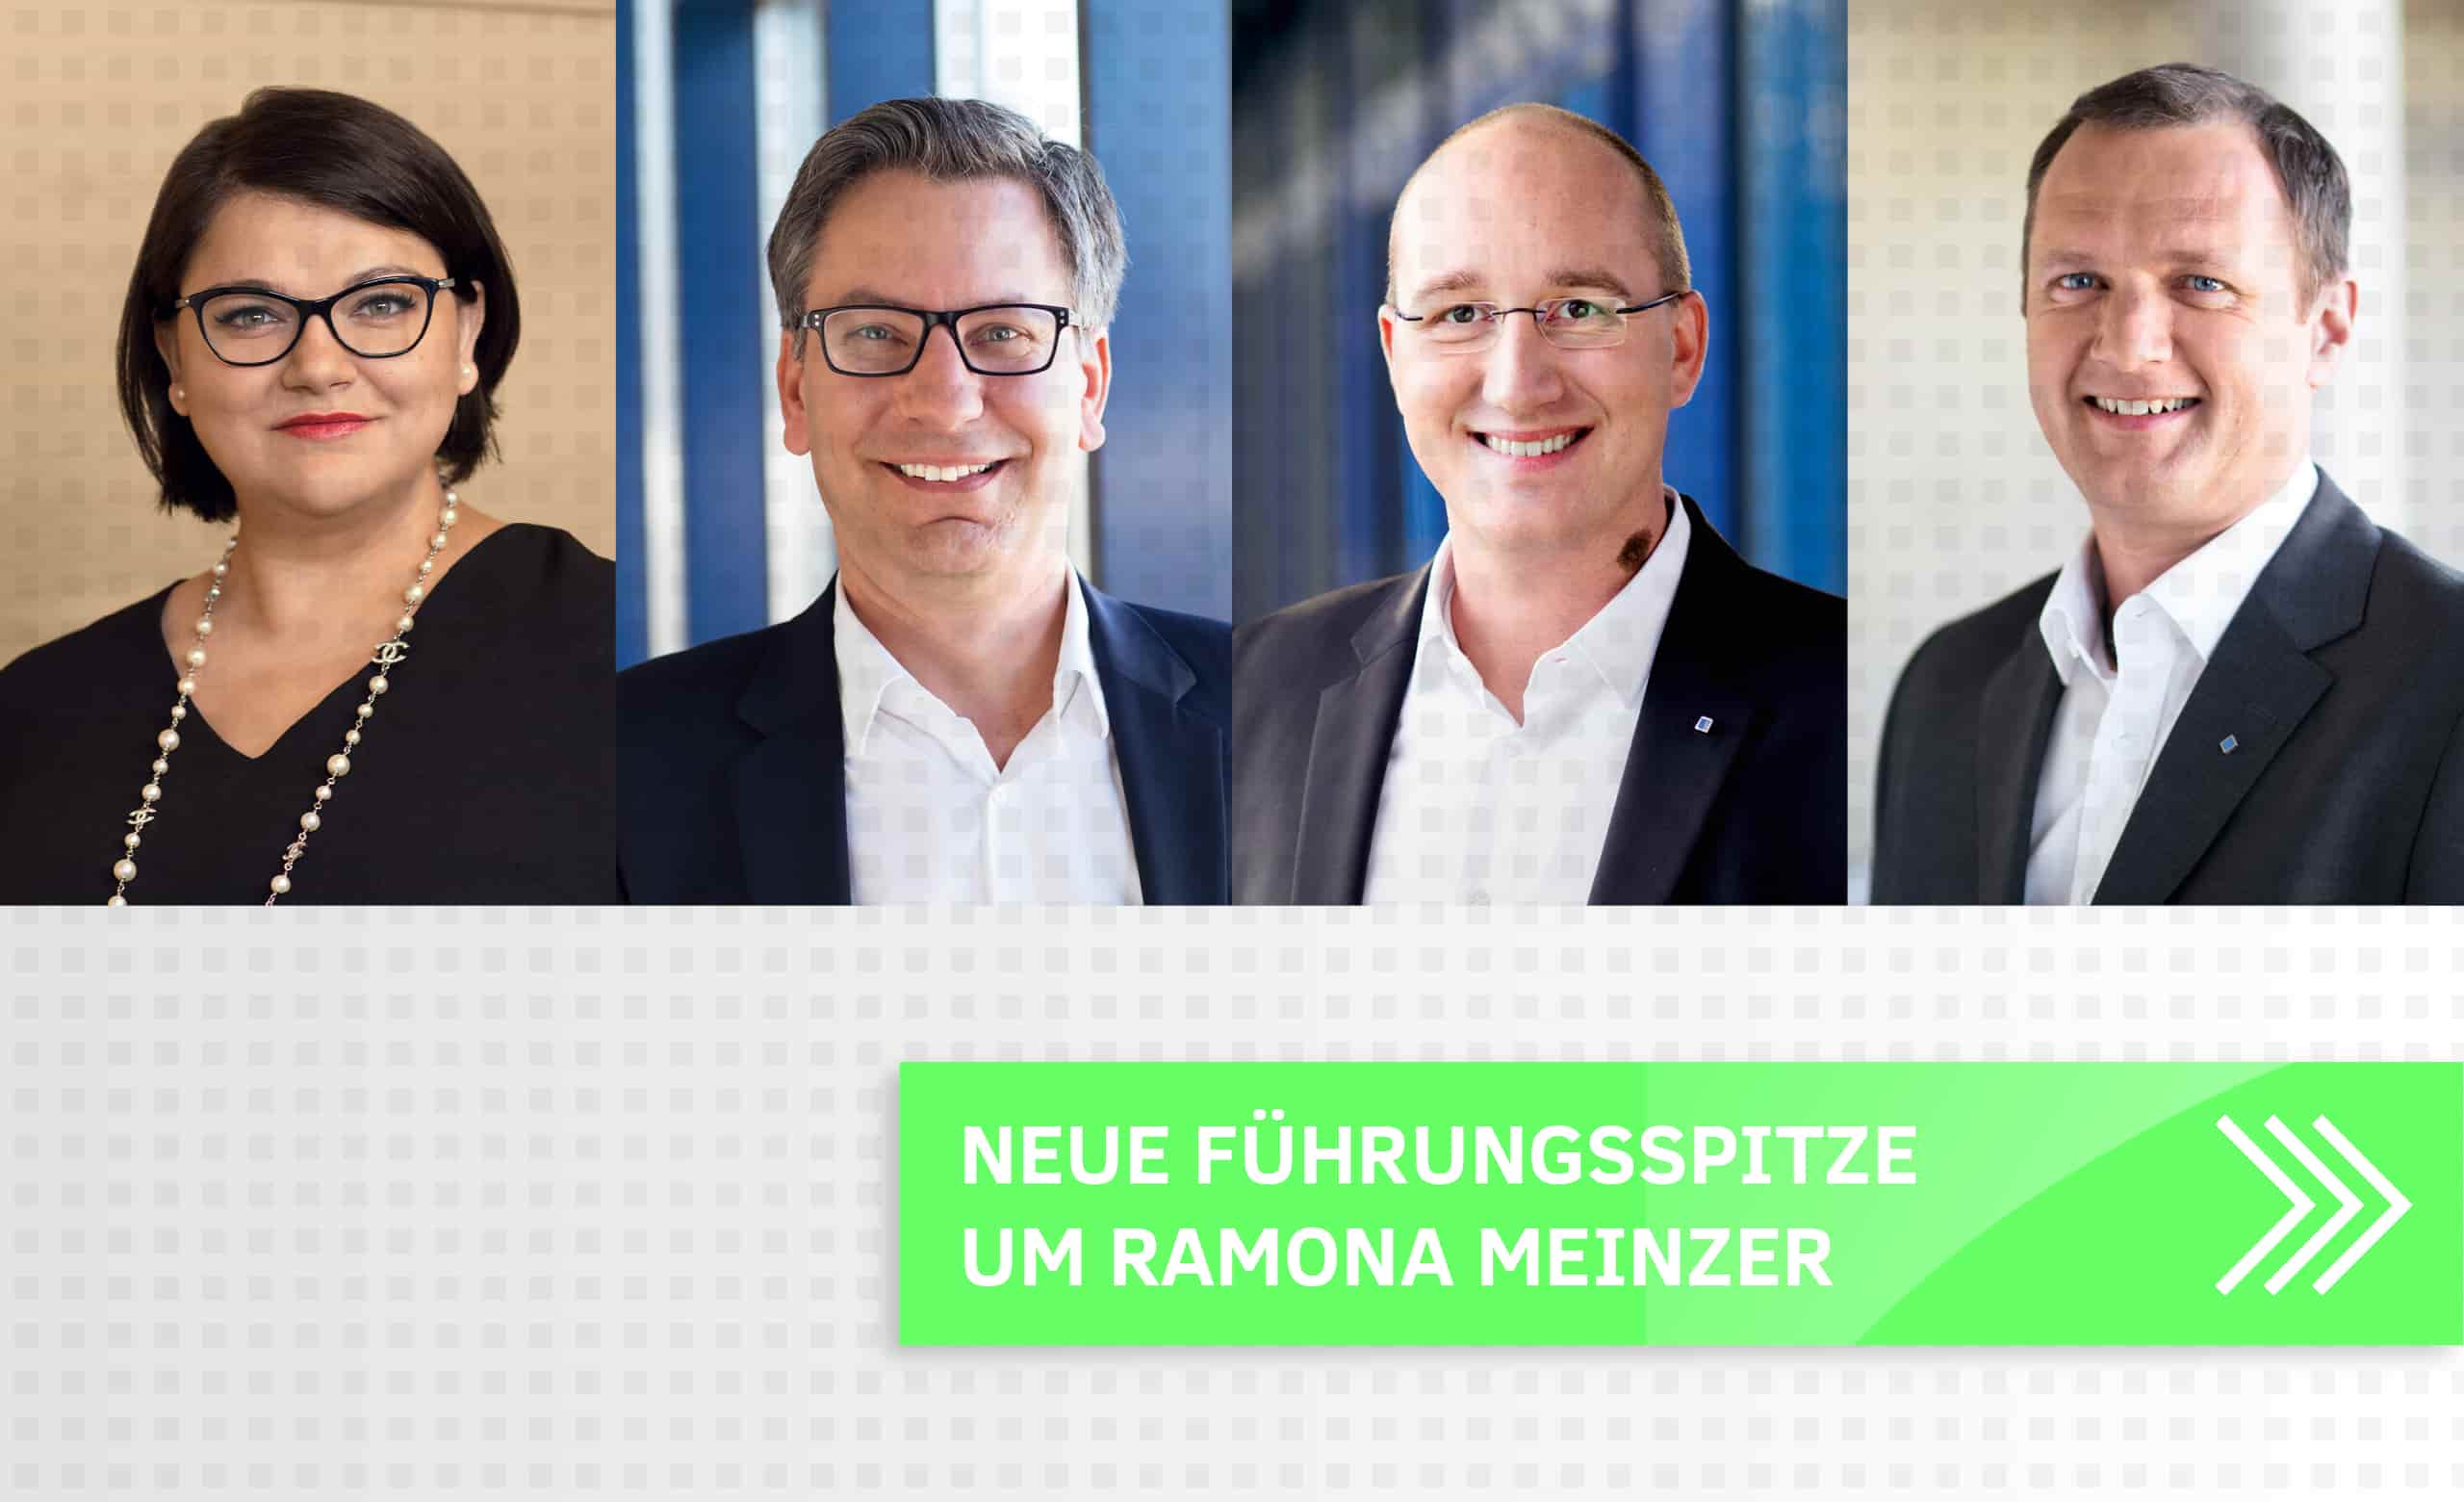 Auf dem Slide sind Bilder der neue Führungsspitze von Aumüller mit dem Text:"Neue Führungsspitze um Ramona Meinzer" zu sehen